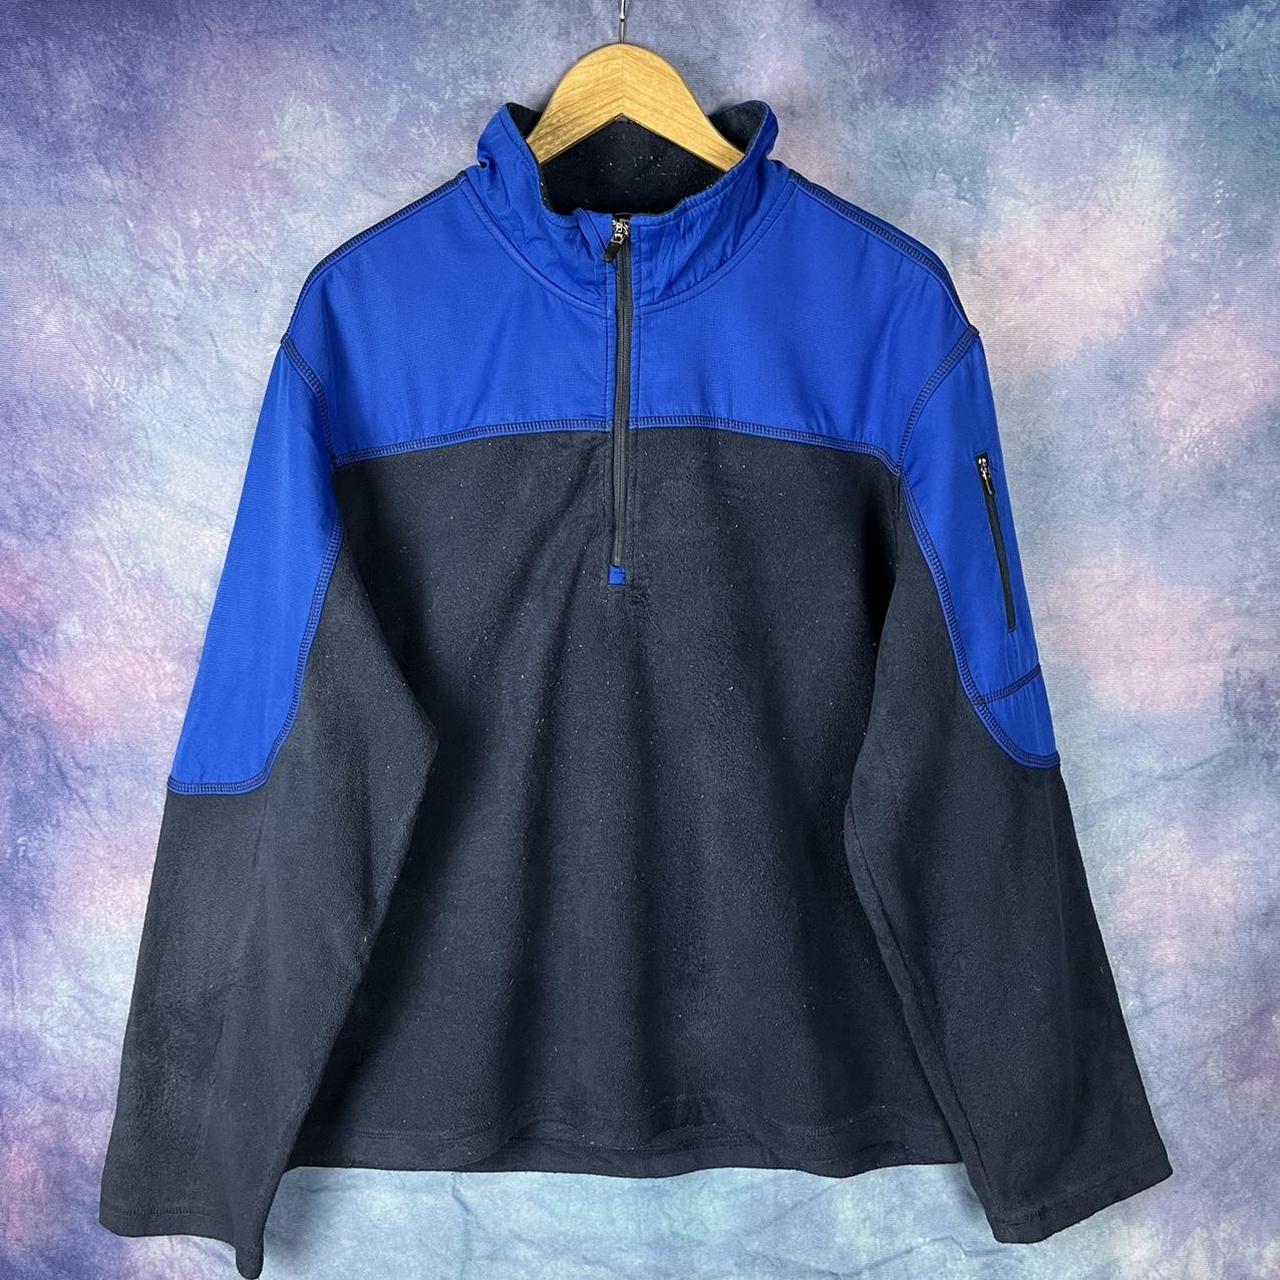 Starter fleece blue + navy mens XL quarter zip... - Depop